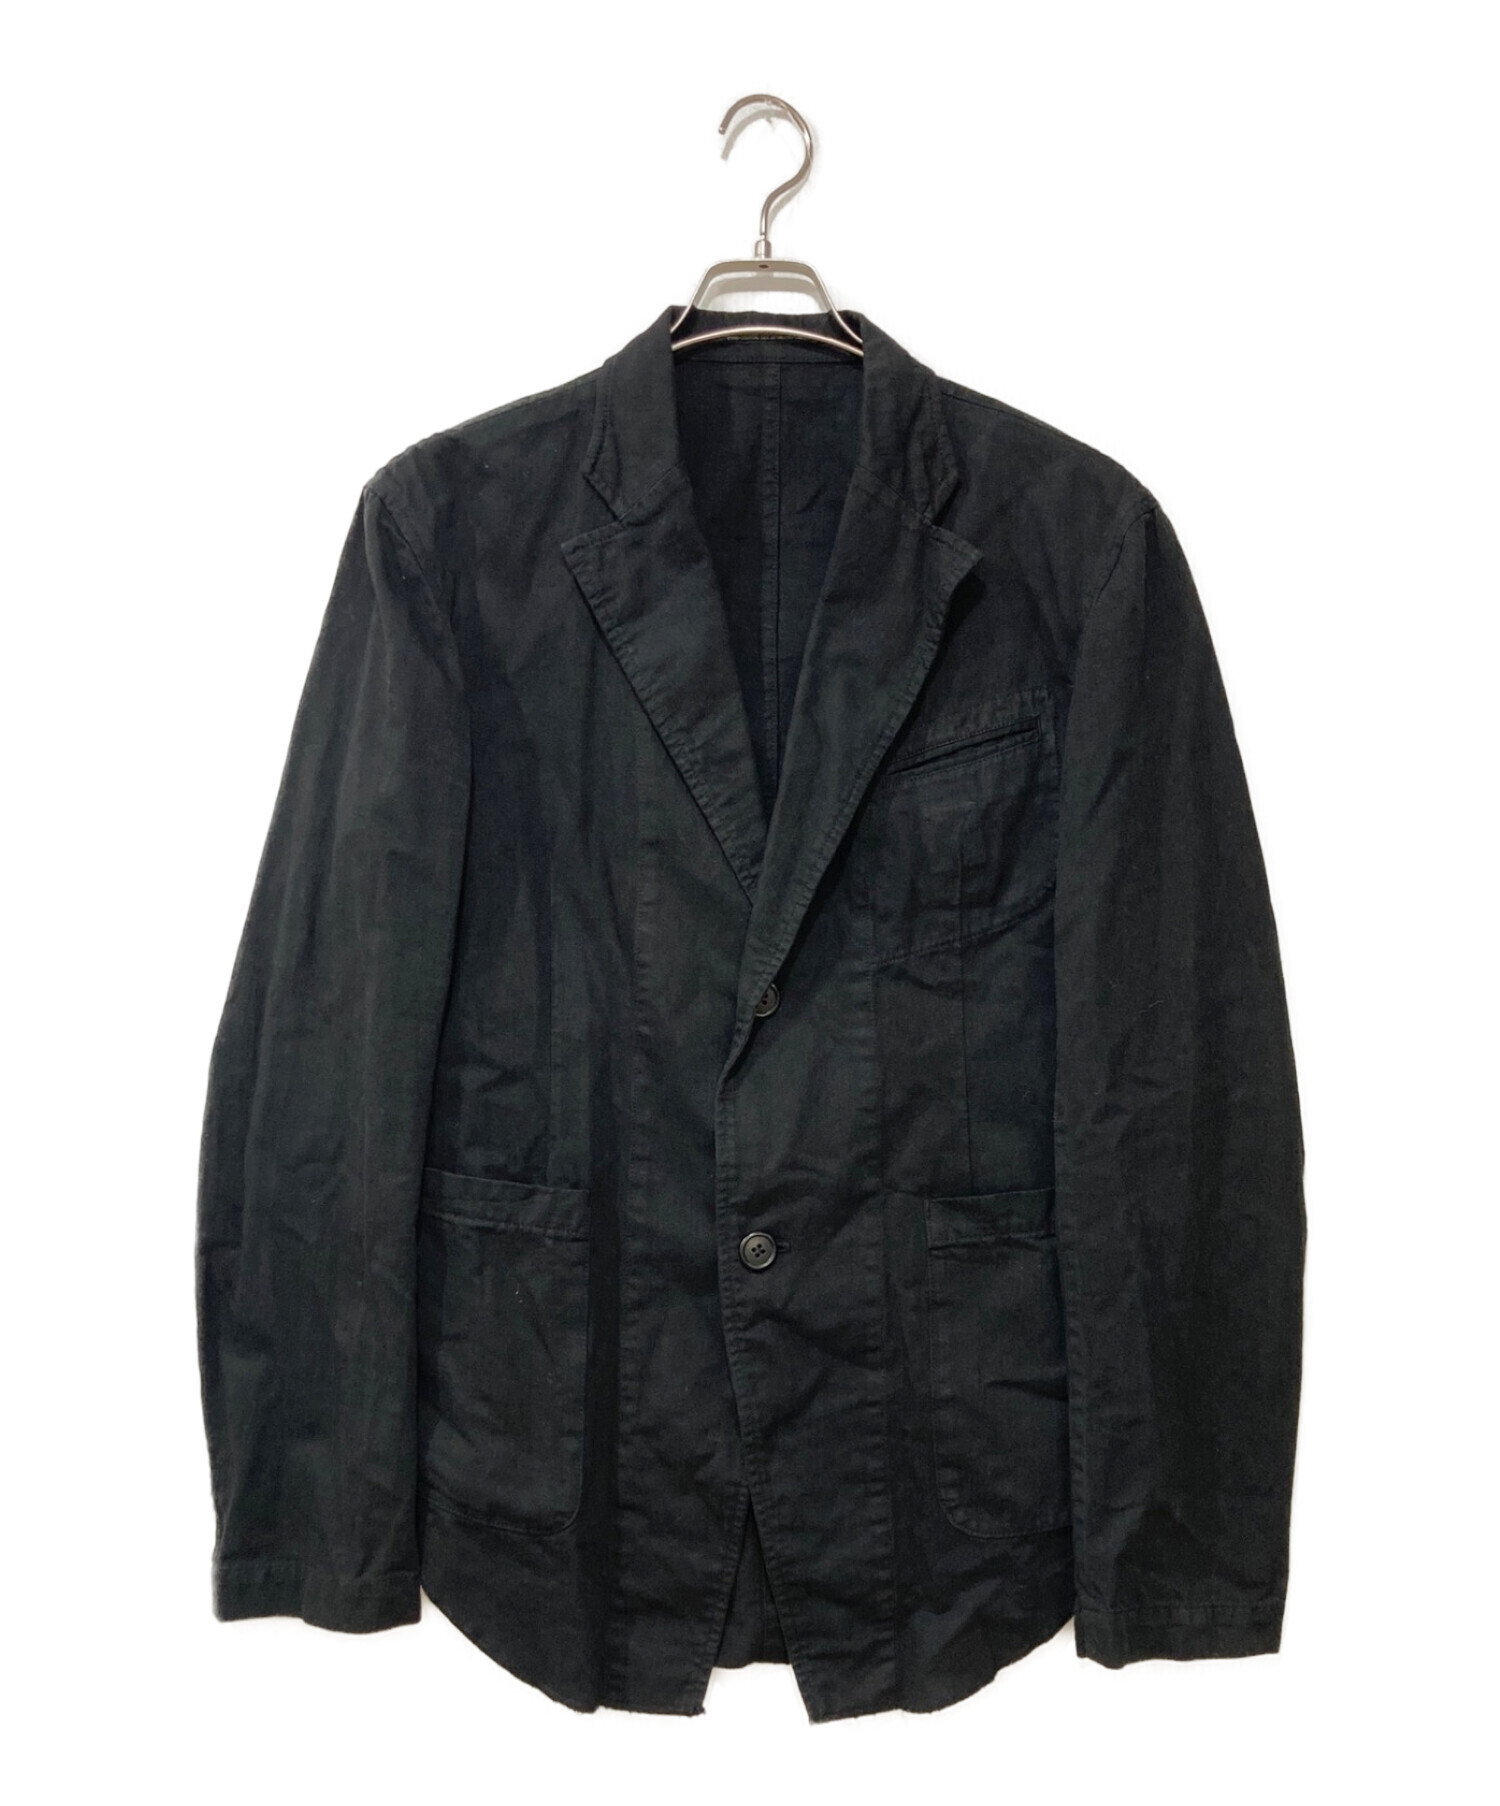 Yohji Yamamoto pour homme (ヨウジヤマモト プールオム) 燕尾デザインジャケット ブラック サイズ:3